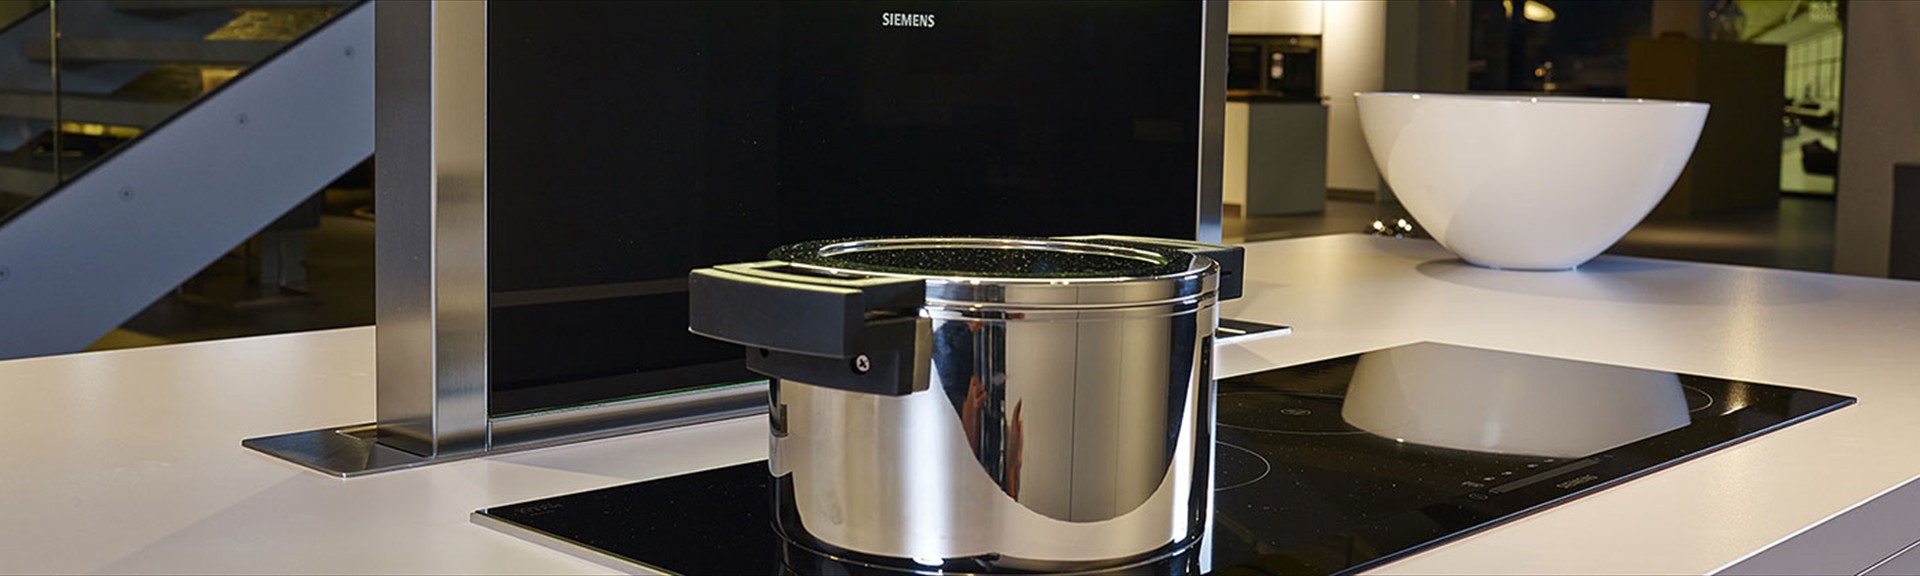 Kuchyňské spotřebiče Siemens - Bosch